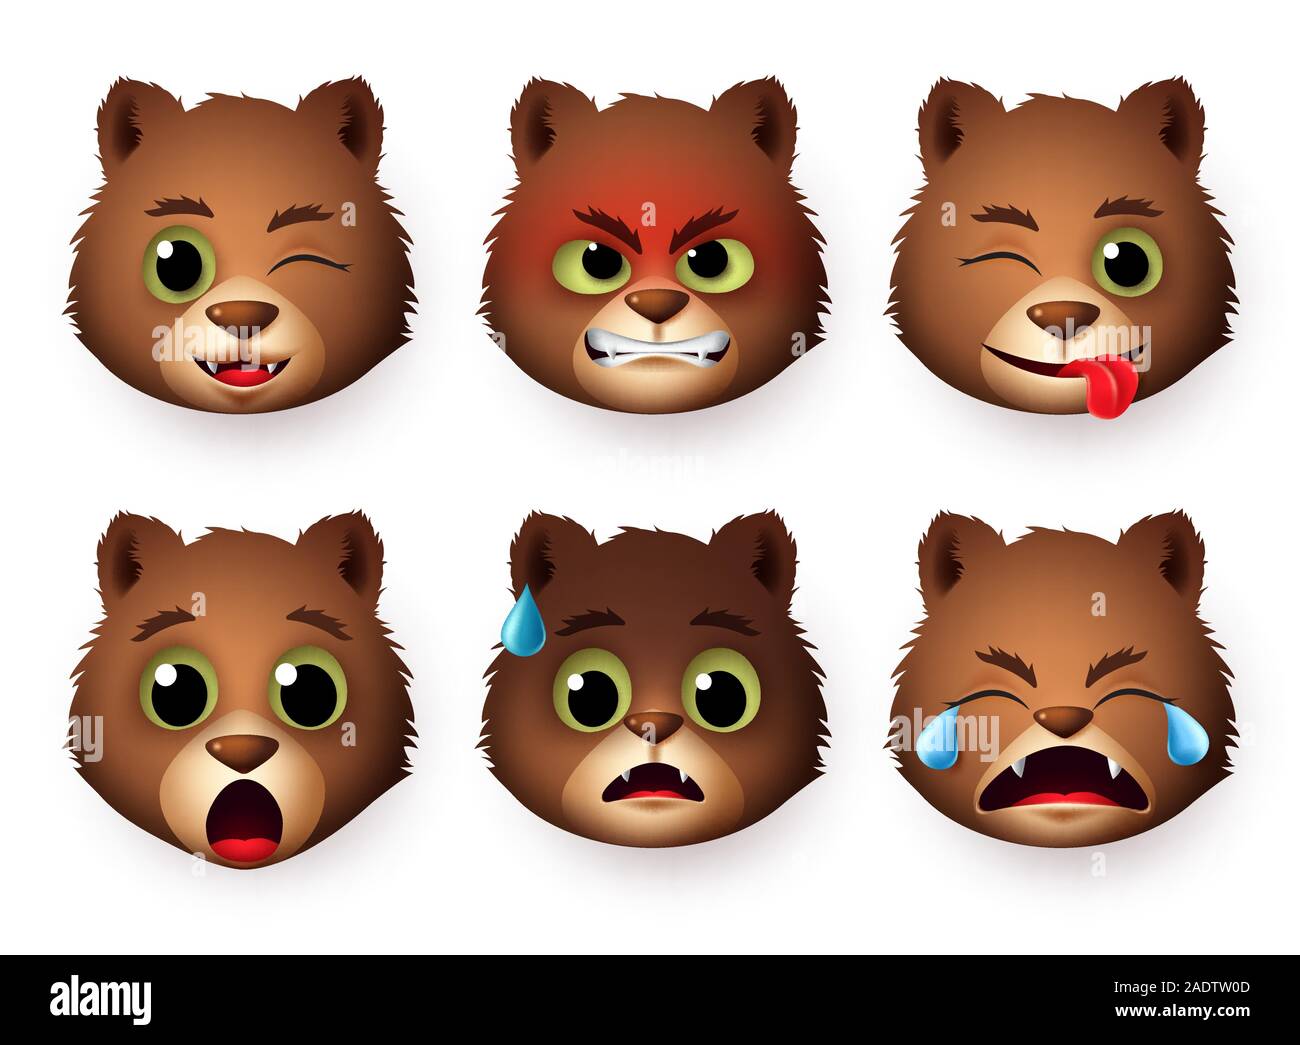 Panda faccia emoticon set di vettore. Gli Emoji di orso panda testa di animale arrabbiato, spaventata, gridando e sorpresa le espressioni facciali isolato. Illustrazione Vettoriale